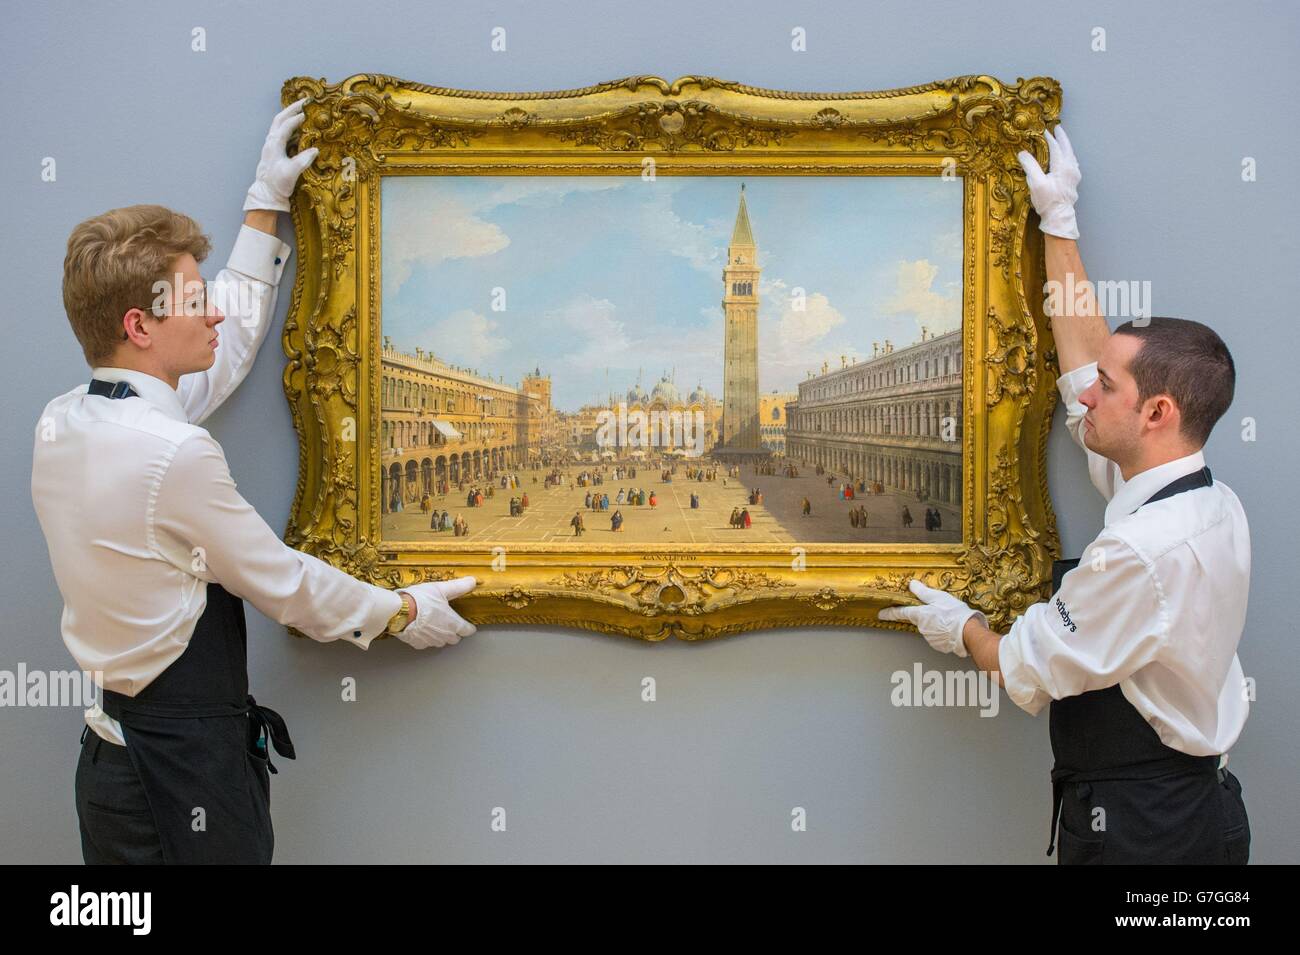 Les employés de Sotheby à Venise, la Piazza San Marco en direction de l'est vers la basilique par Canaletto à la galerie Sotheby, à Mayfair, Londres, qui fait partie de leur ancien Maître et amp; British Paintings Evening sale. Banque D'Images